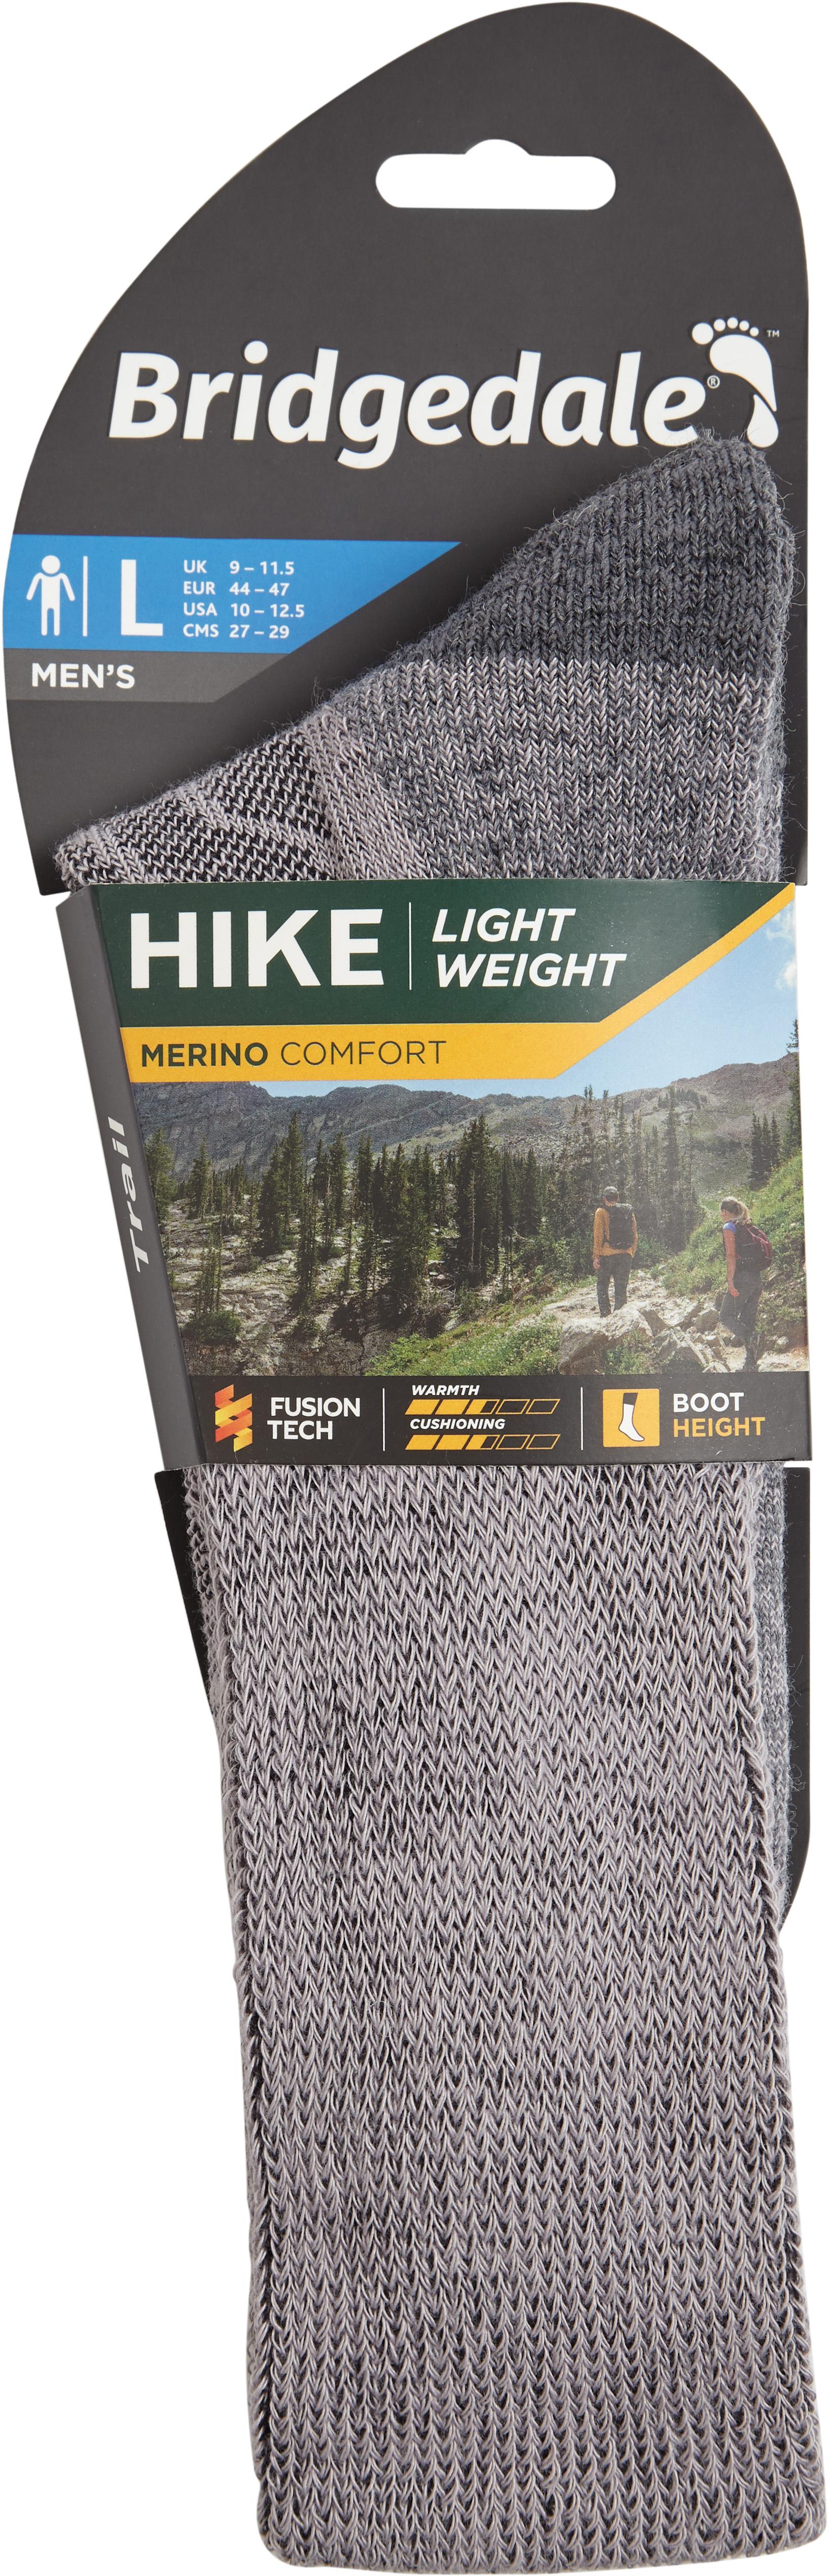 Hike Lightweight Merino Comfort Boot